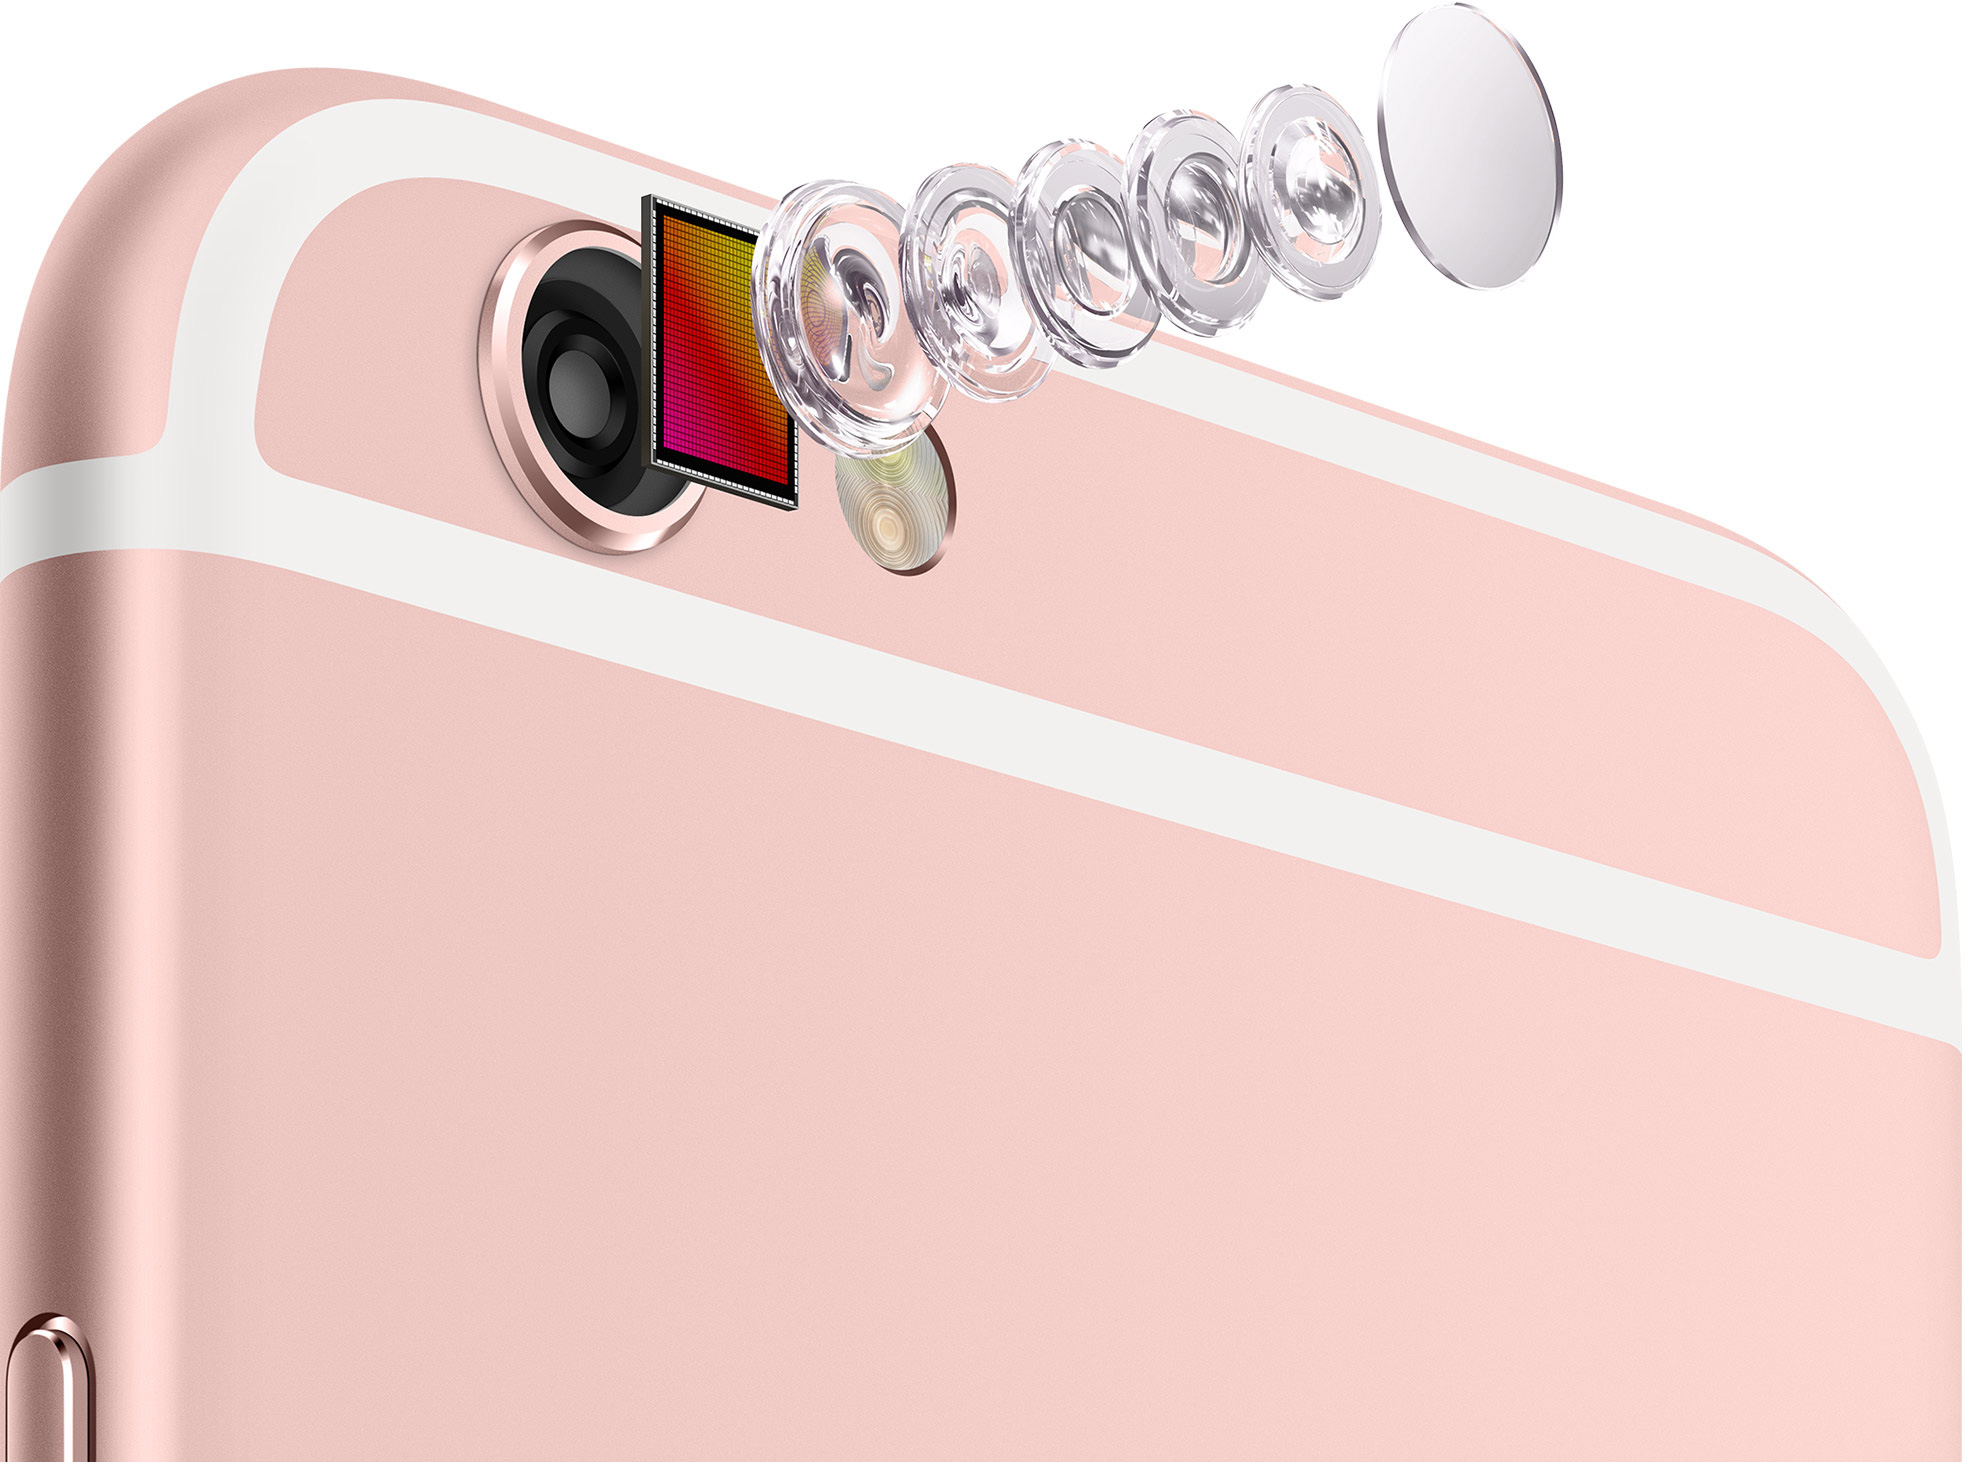 IPhone 6s iSight camera (rear)